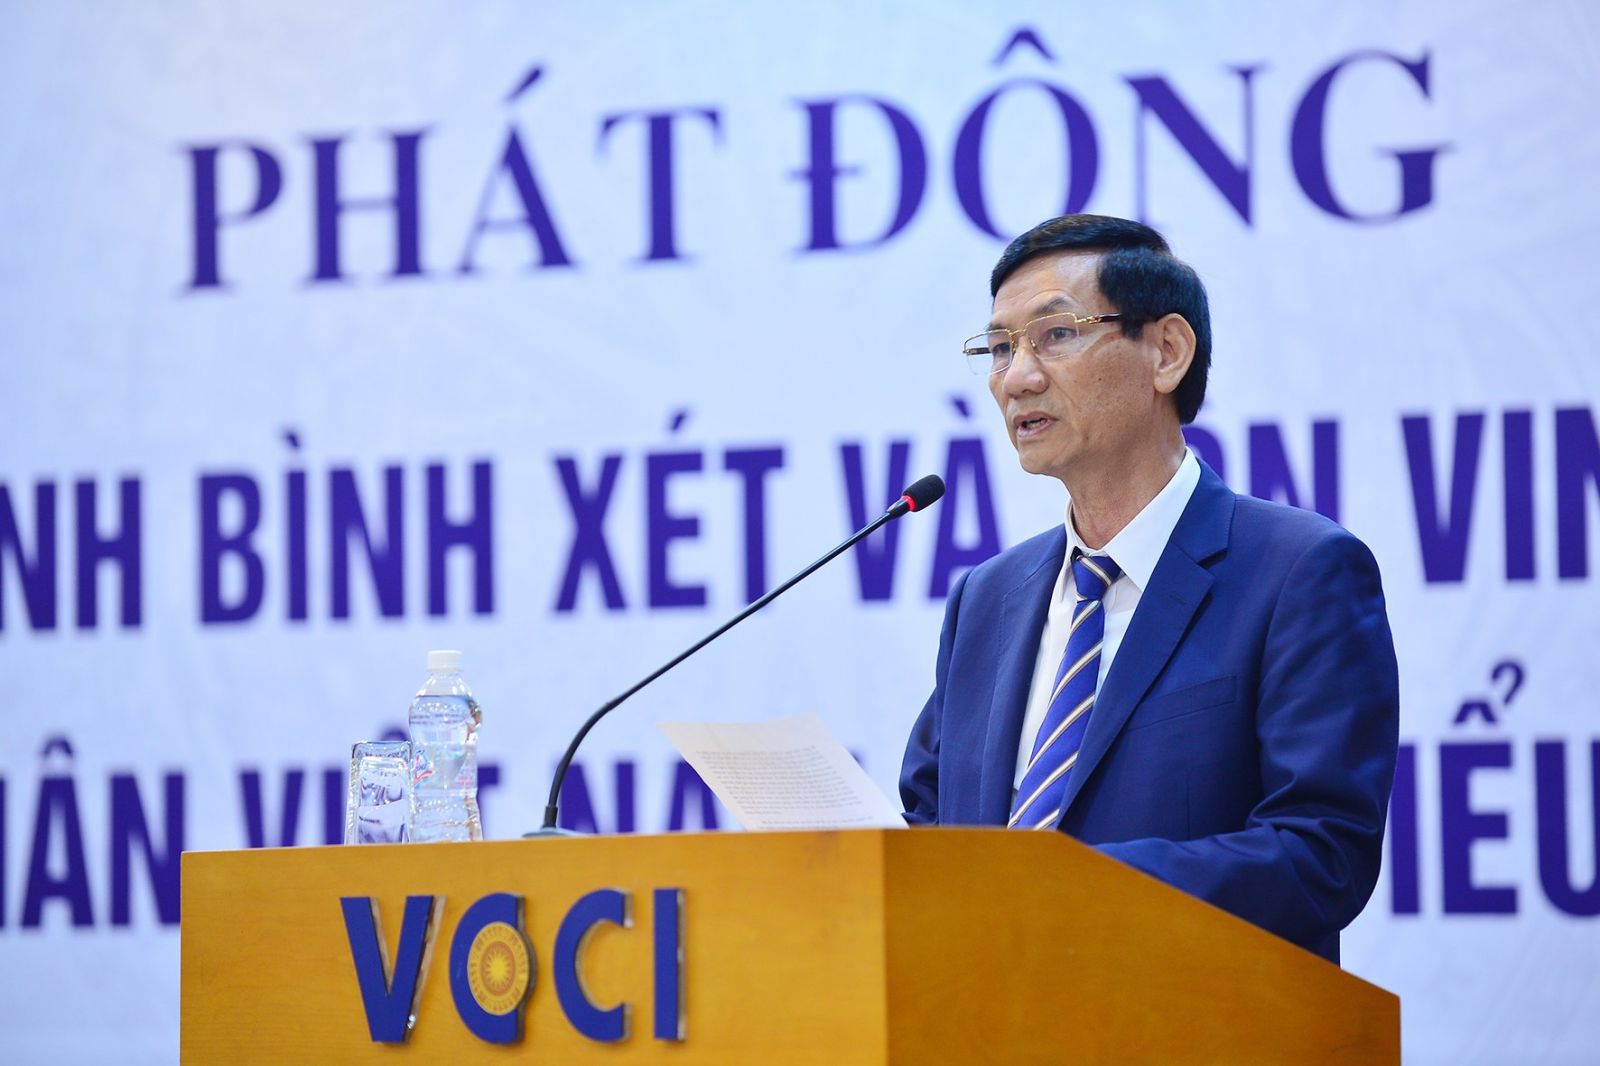 Ông Đỗ Văn Vẻ - Chủ tịch Hiệp hội doanh nghiệp tỉnh Thái Bình